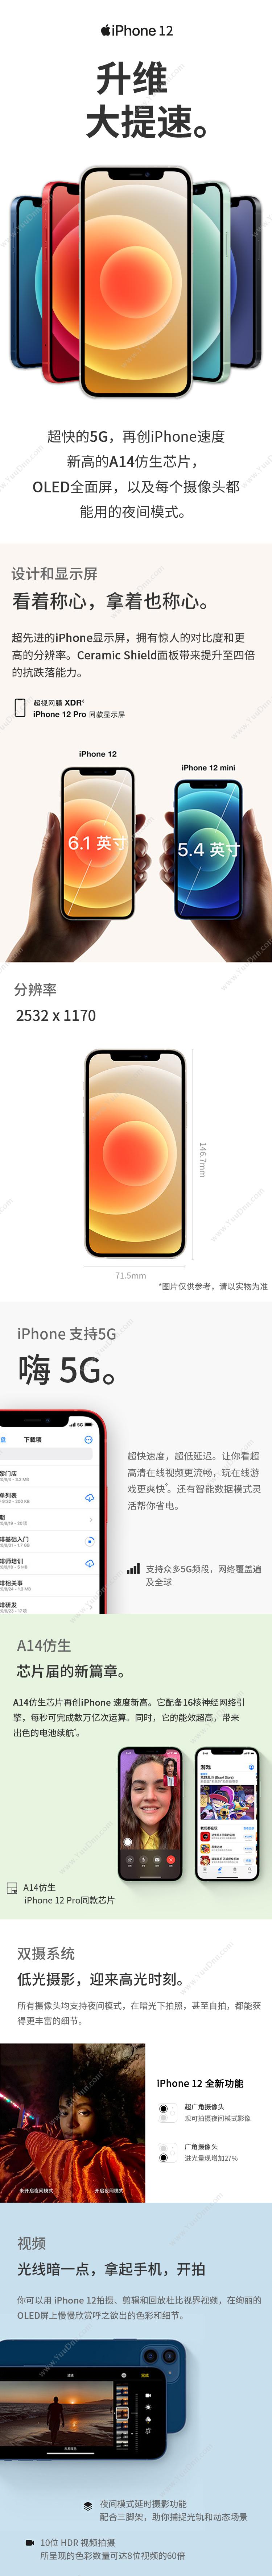 苹果 Apple iPhone 12 (MGH33CH/A) 256G 红色 移动联通电信5G手机 手机